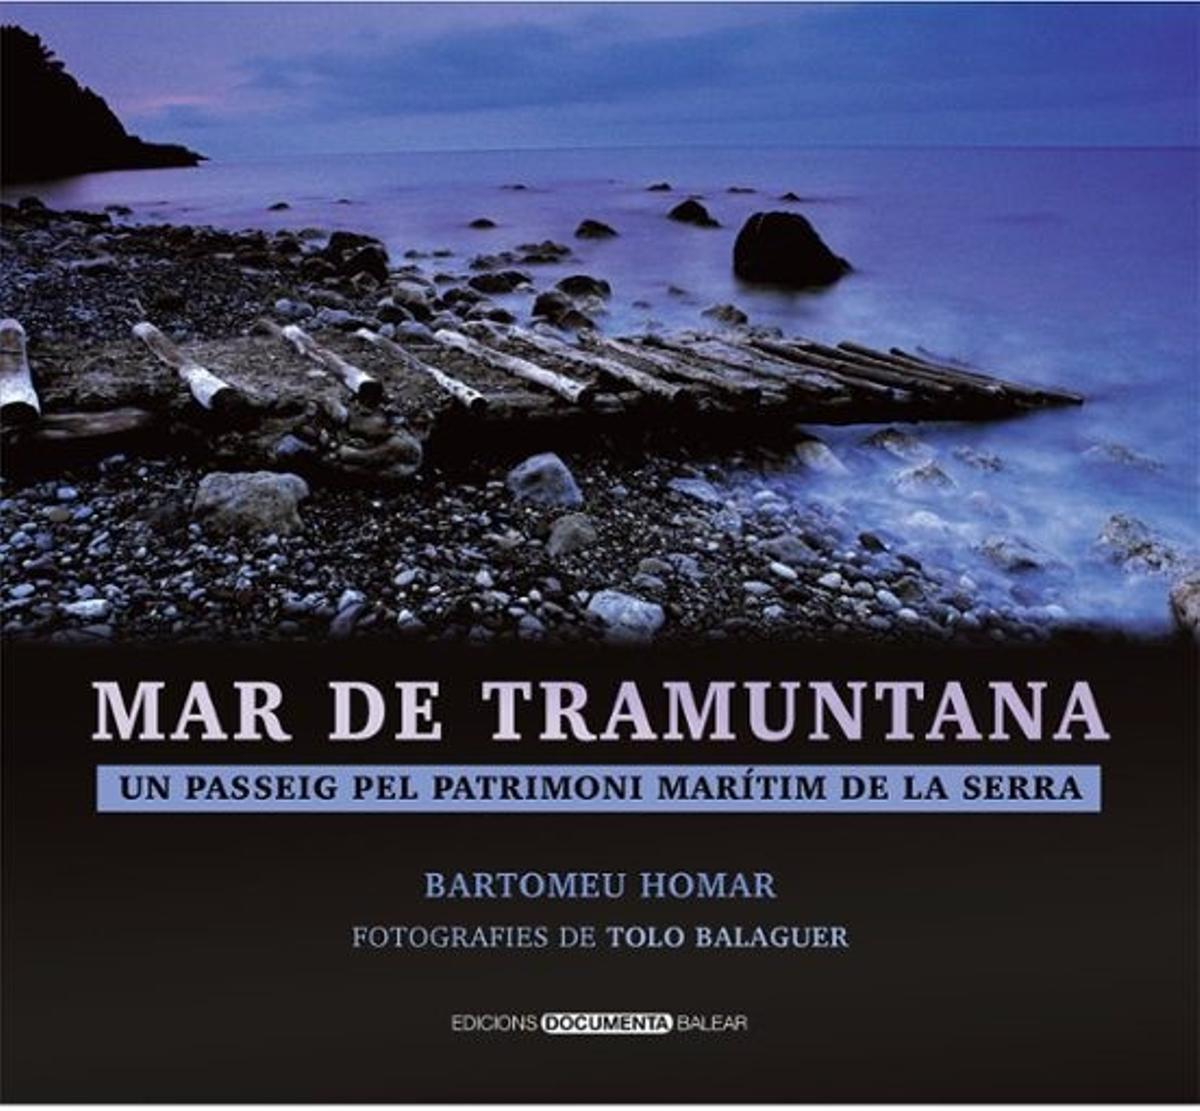 Cover mit Bild von Tolo Balaguer.